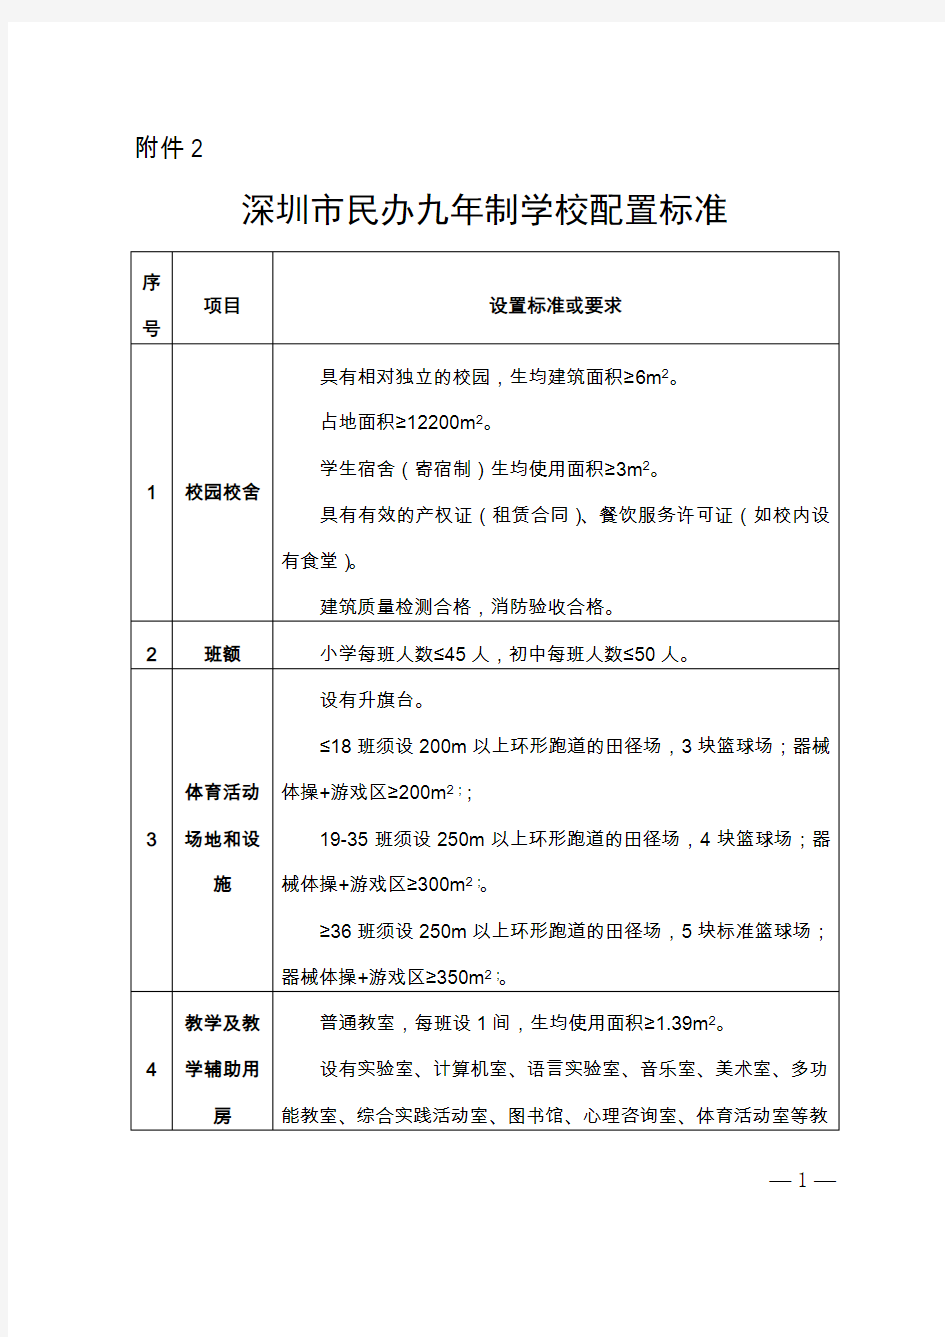 深圳市民办九年制学校配置标准